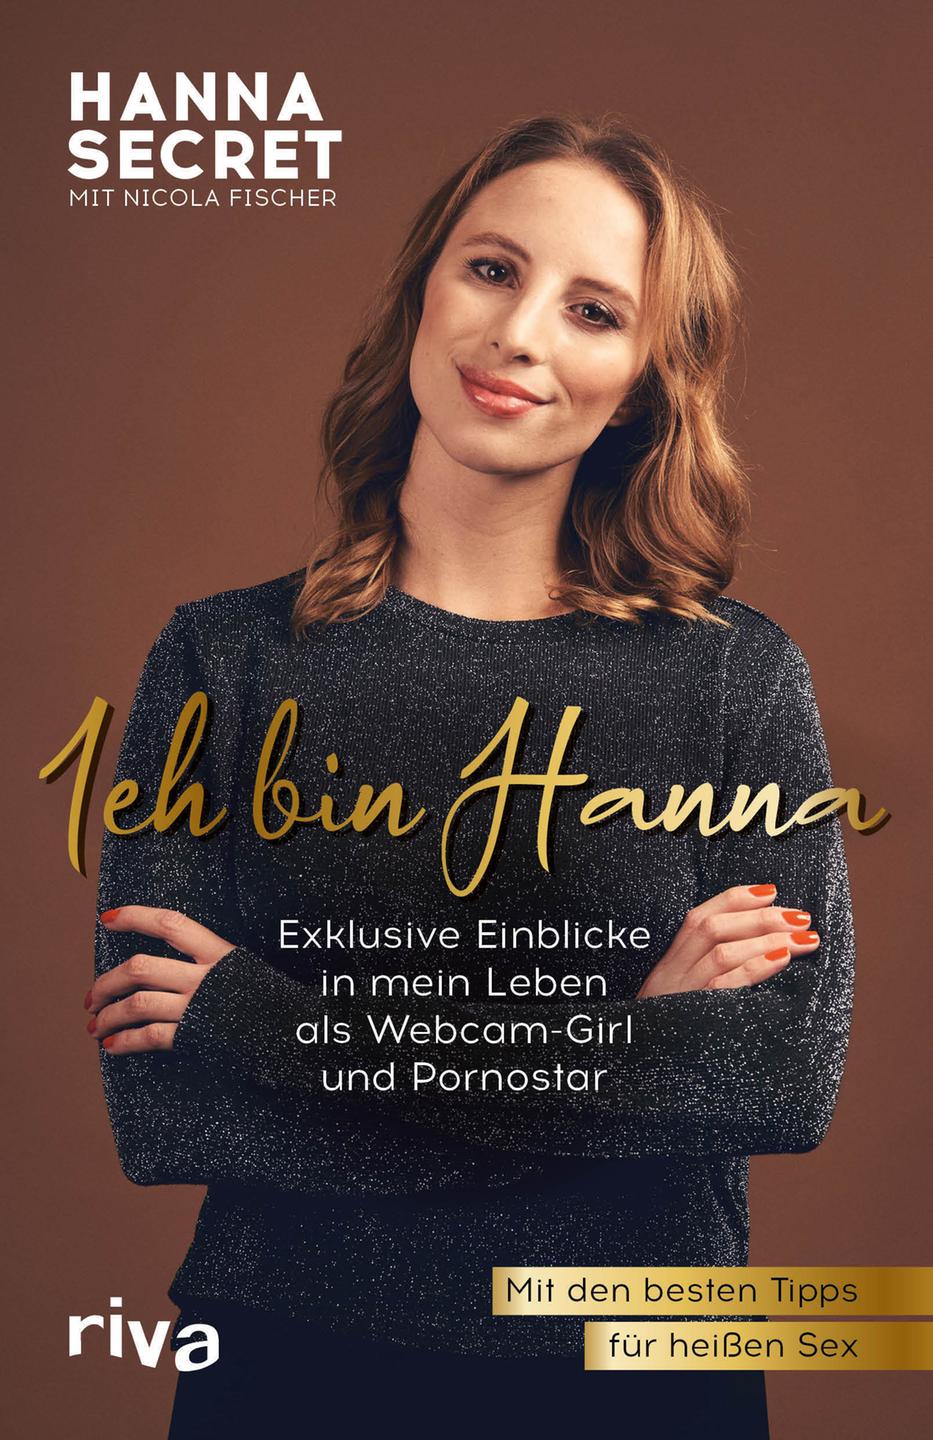 Buchcover zu "Ich bin Hanna" von Hanna Secret